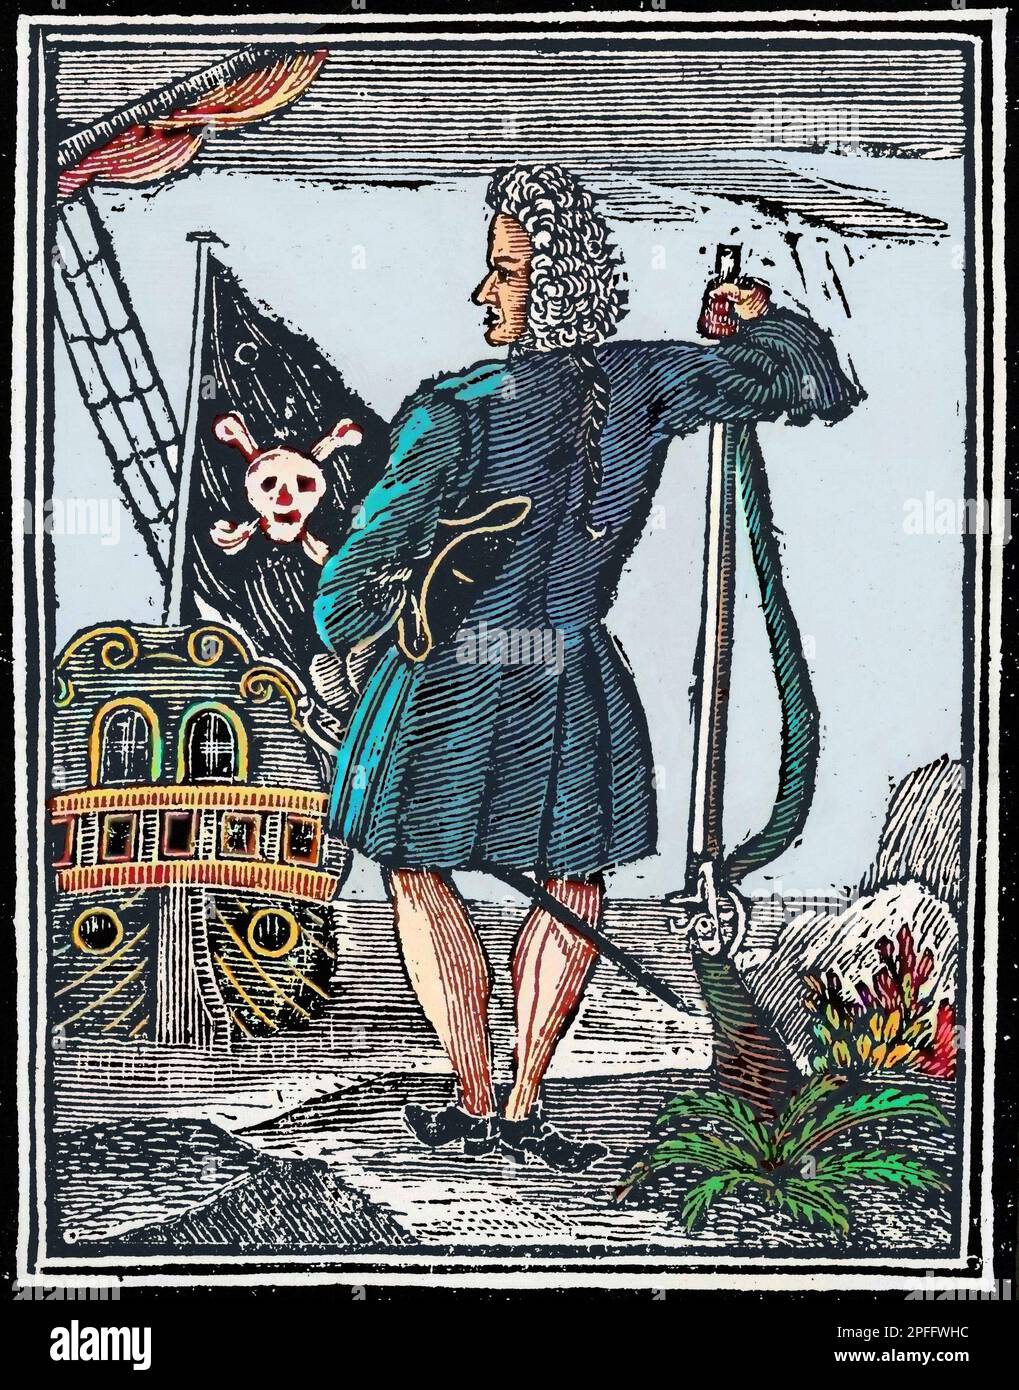 Englisch-barbadianischer Pirat, auch bekannt als Gentleman Pirate - Le Pirate „Gentleman“ Stede Bonnet (1688-1718). Schwerkraft. Gravur aus „A General History of the Pyrates“ (1724) Stockfoto